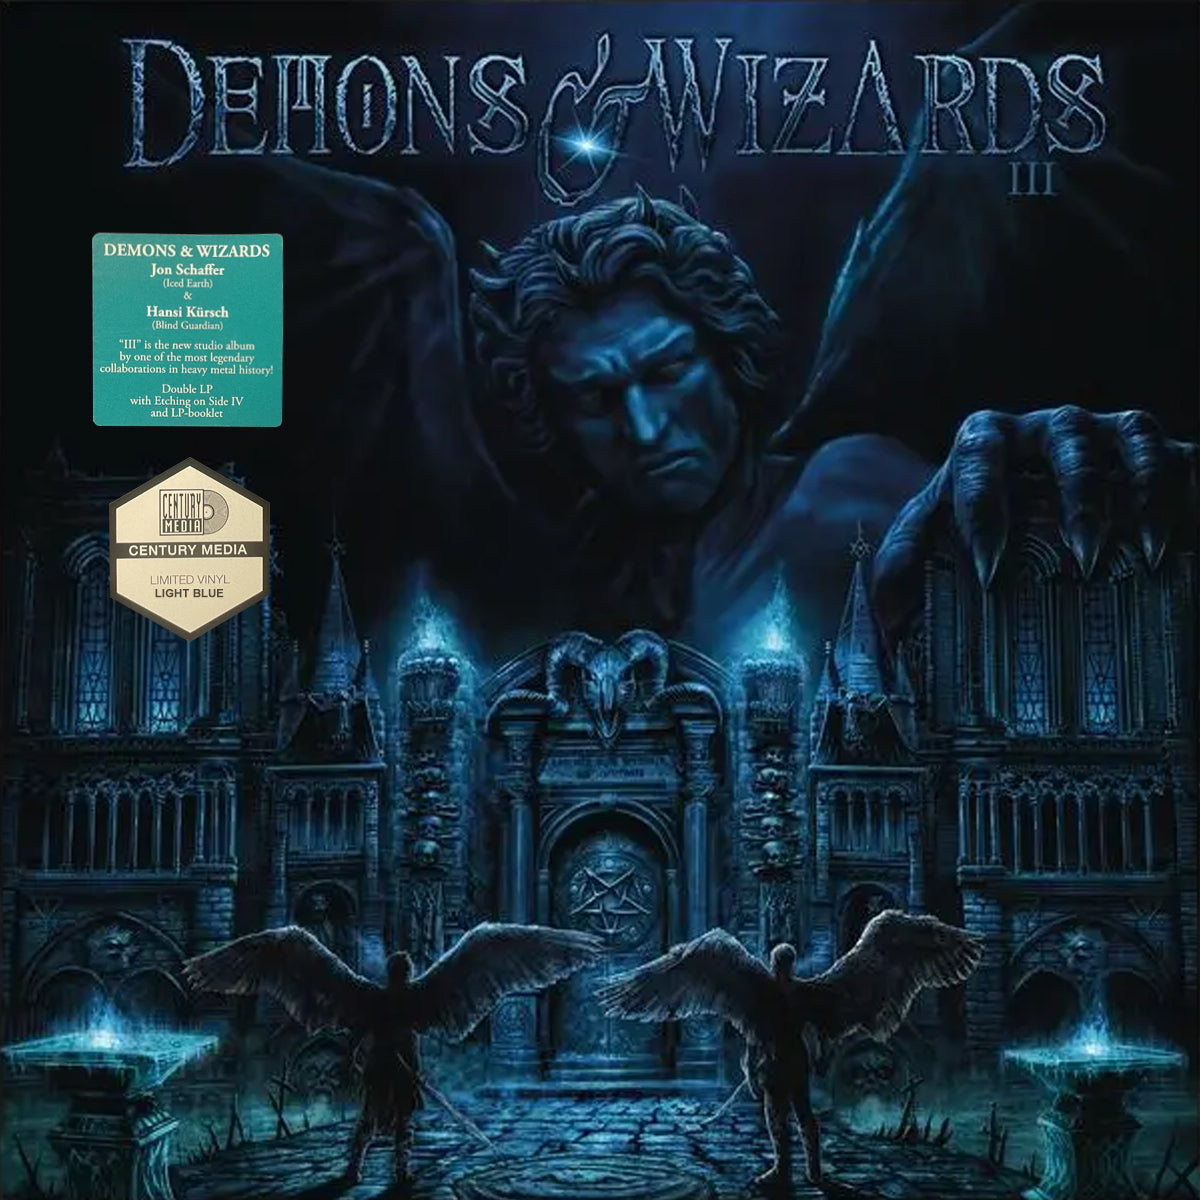 DEMONS & WIZARDS - Demons & Wizards III Vinyl LP - Light Blue